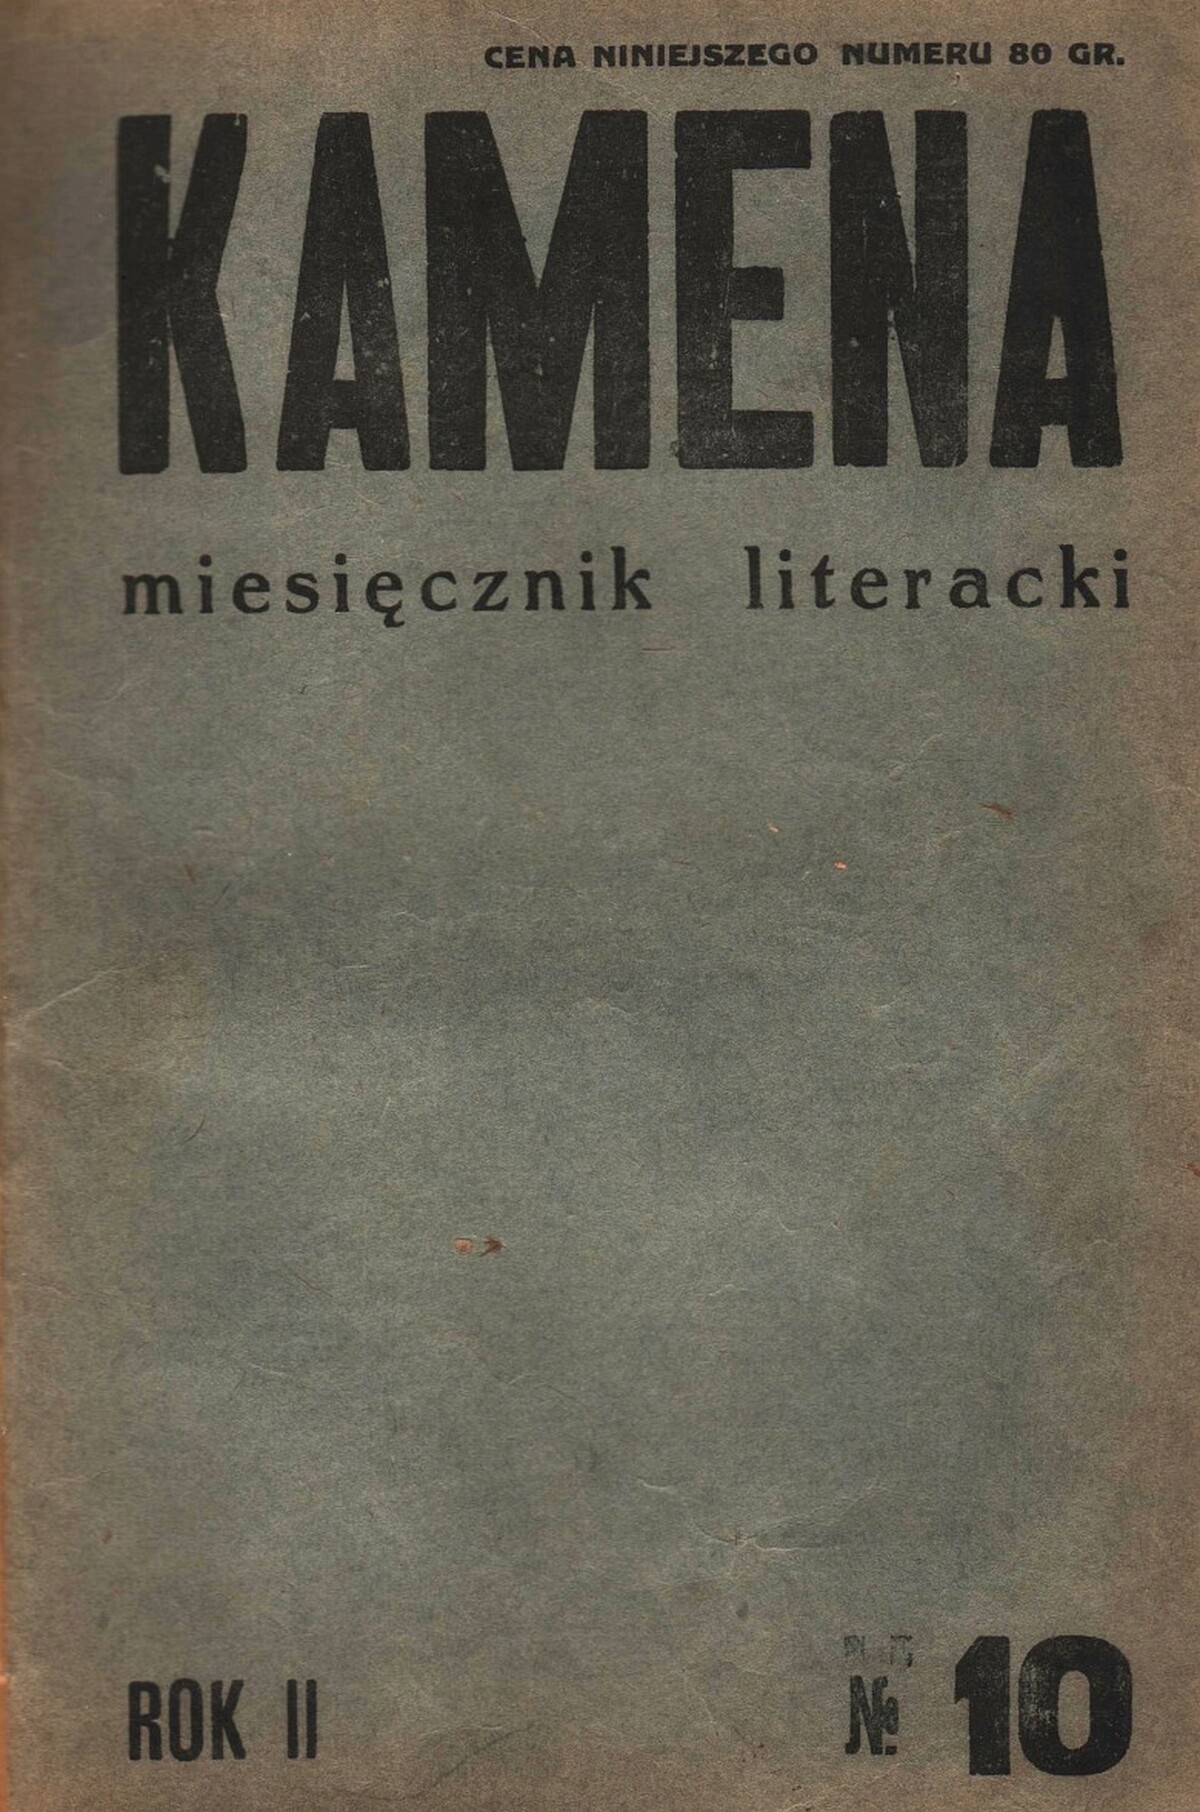 Bruno Schulz, <i>Wiosna</i>, „Kamena” 1935, nr 10, s. 191–193